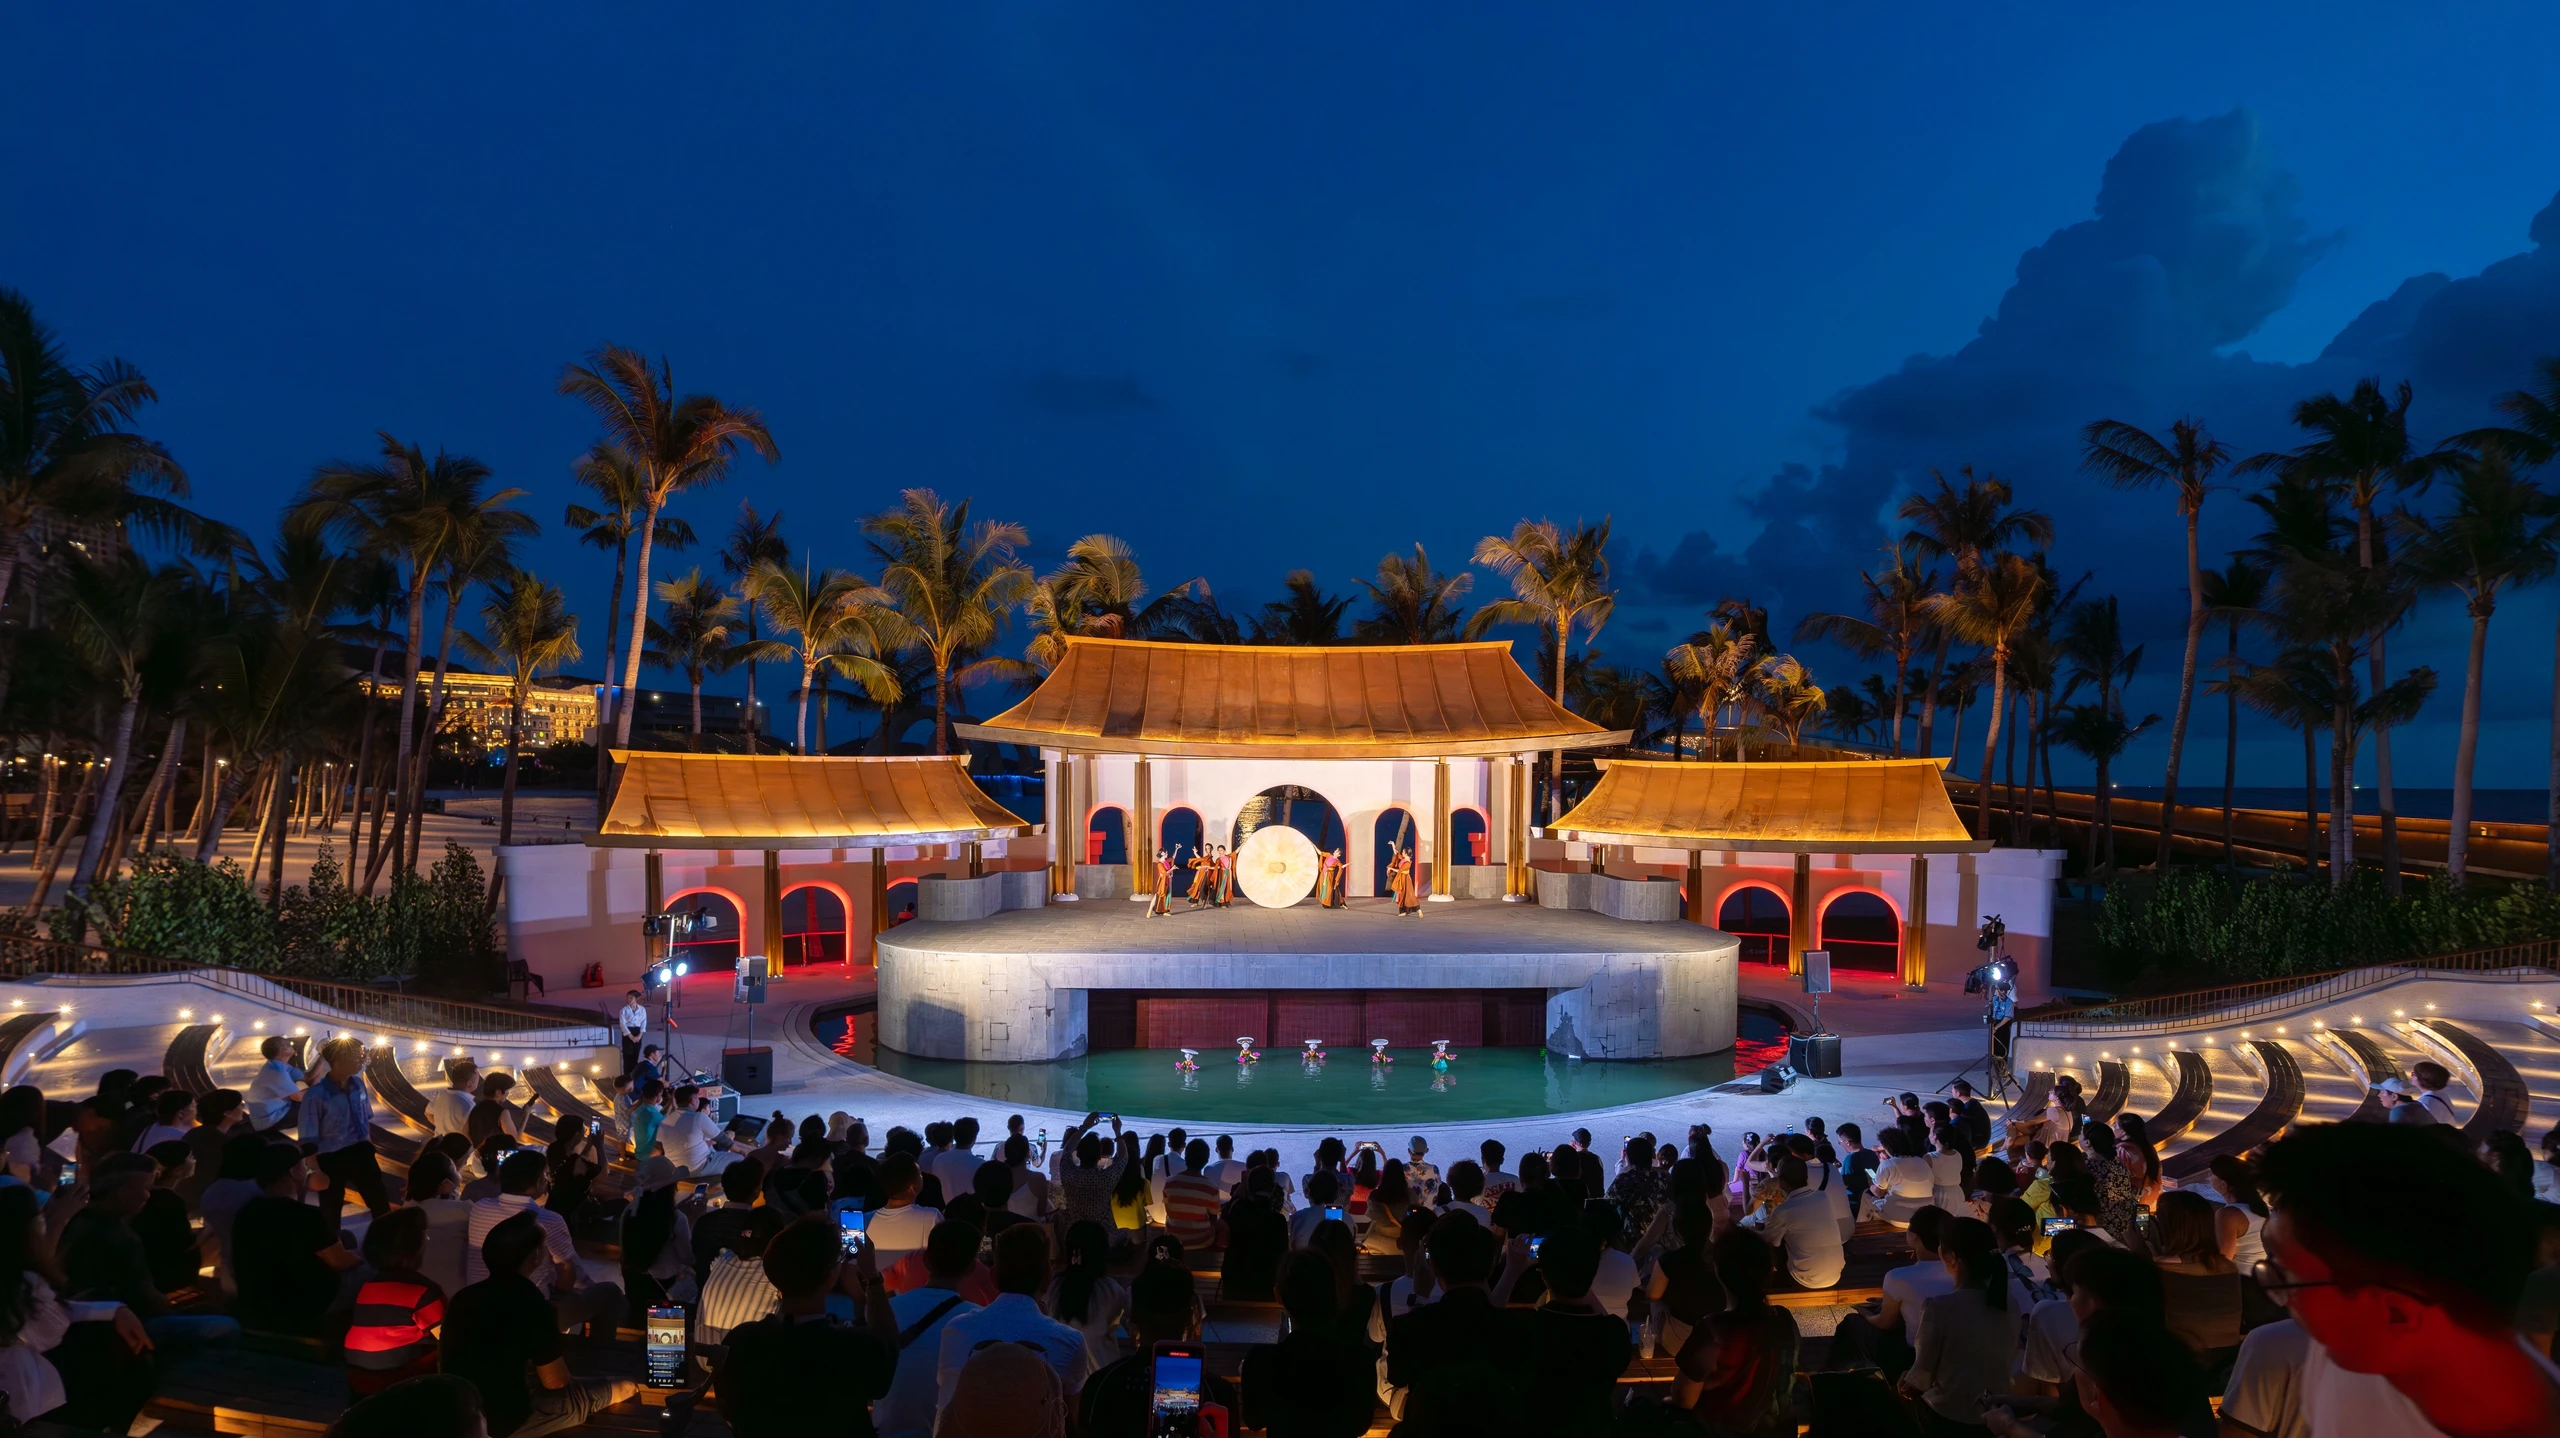 Độc đáo nhà hát múa rối bên biển lần đầu tiên có tại Việt Nam